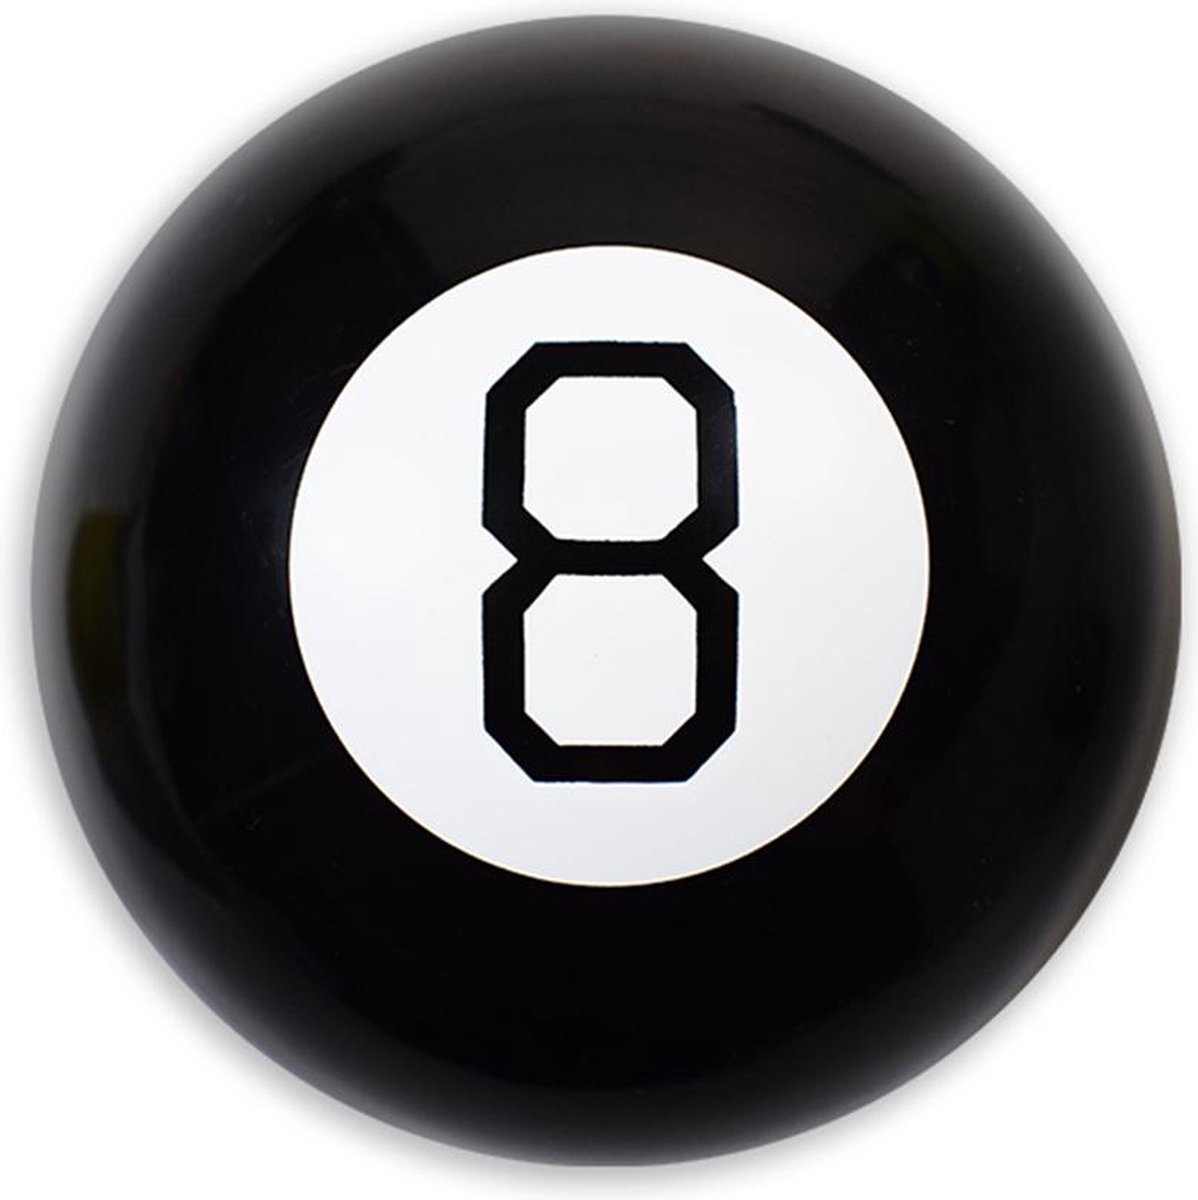 Koning Import - Magic 8 ball - Orakel bal - Voorspel de toekomst - Grappig cadeau - Biljartbal - Antwoorden op je vragen